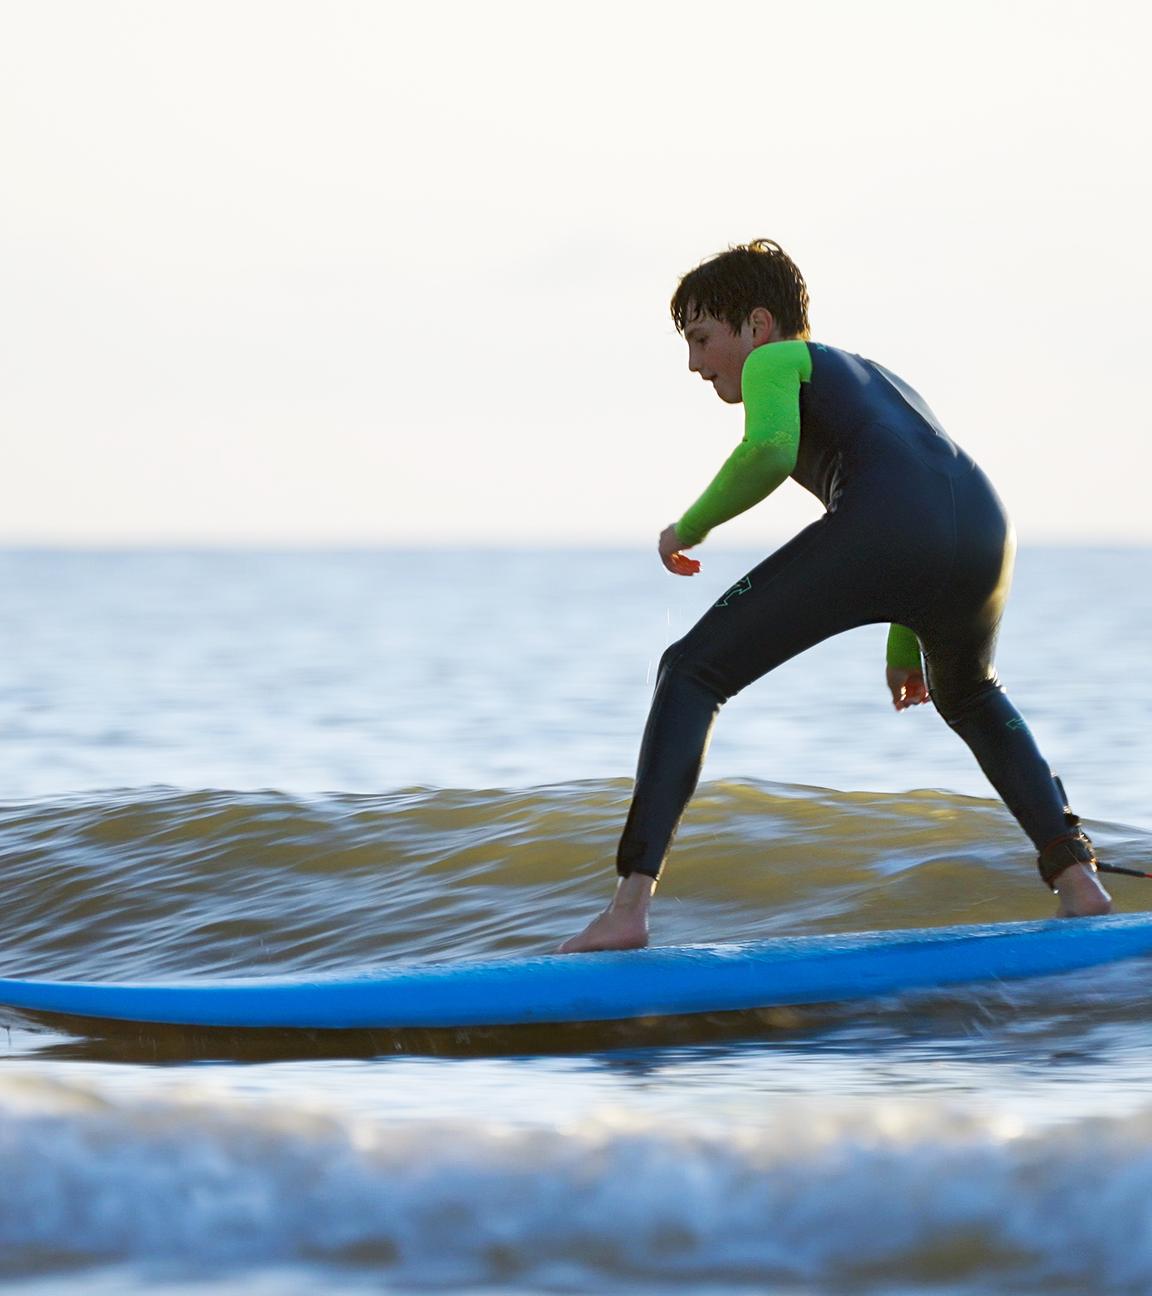 Junger Surfer auf dem Brett im Wasser.